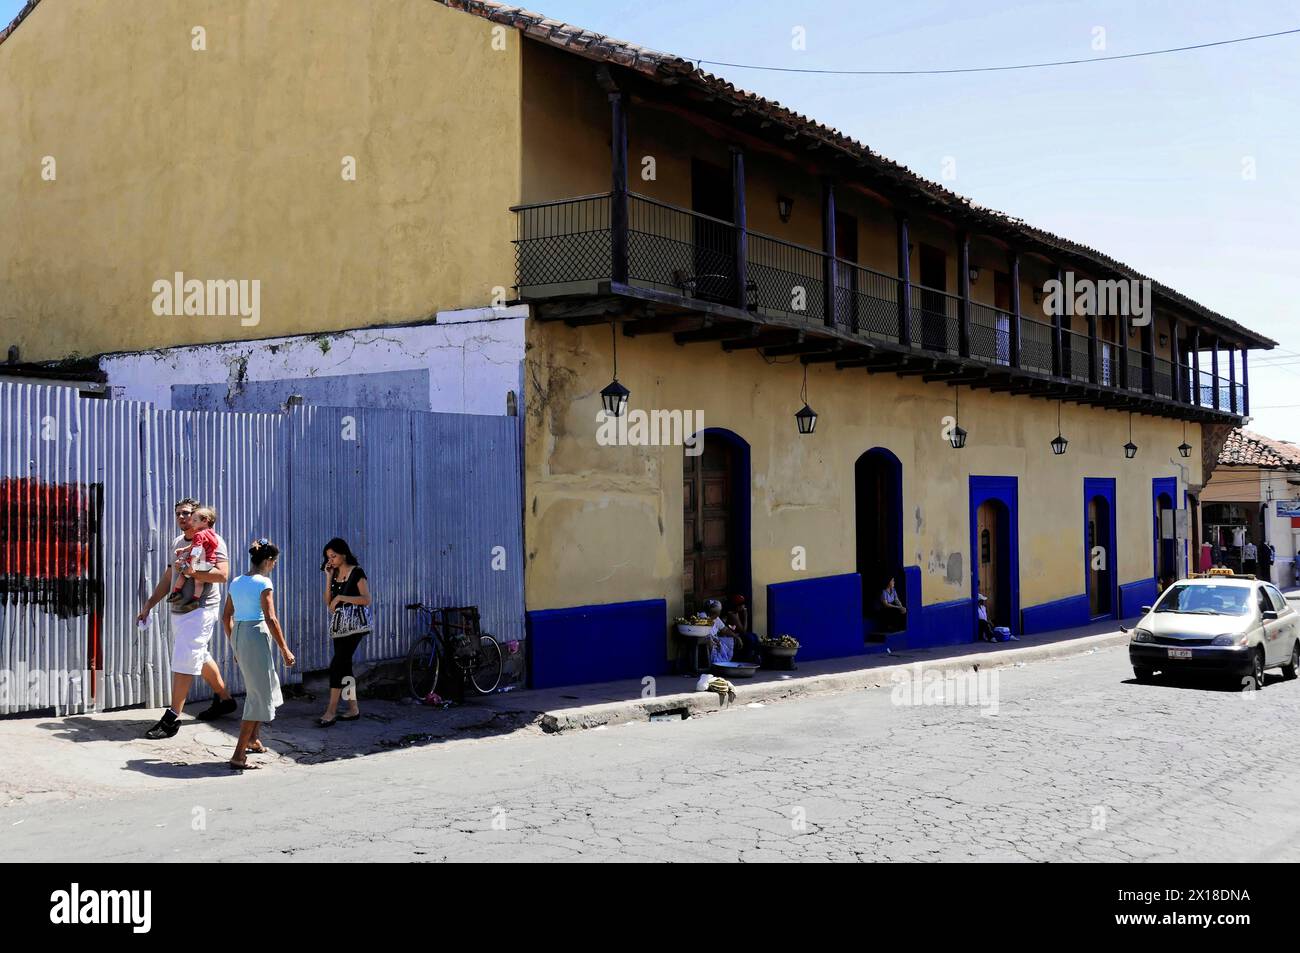 Leon, Nicaragua, persone che camminano lungo edifici storici in una strada acciottolata, America centrale, America centrale - Foto Stock